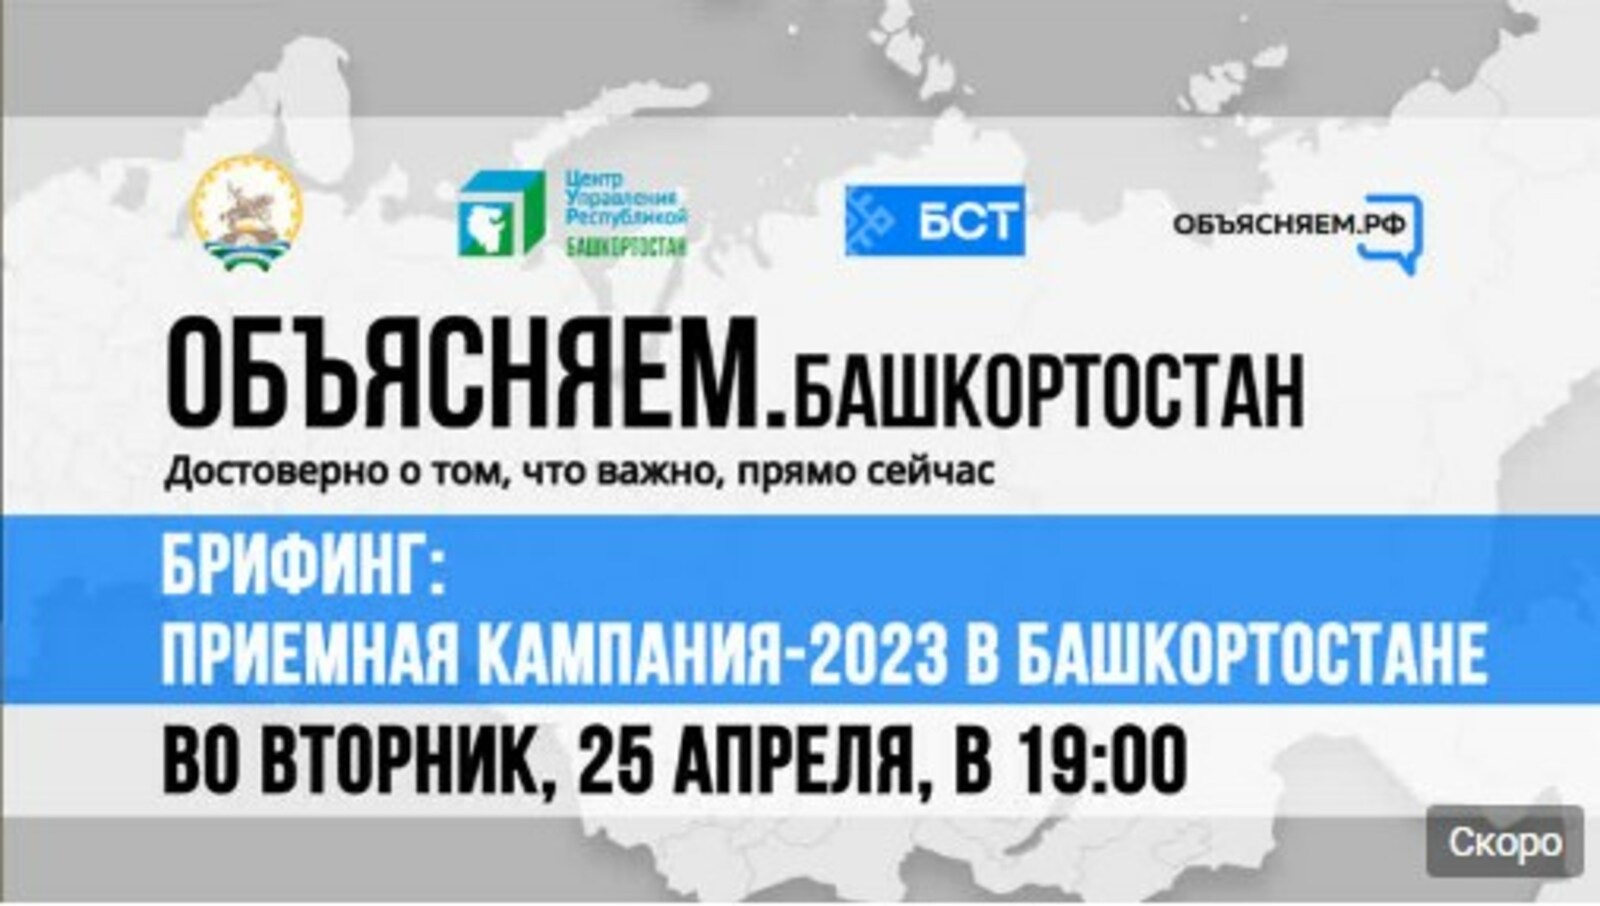 В Башкортростане пройдёт брифинг по вопросам Приёмной кампании-2023